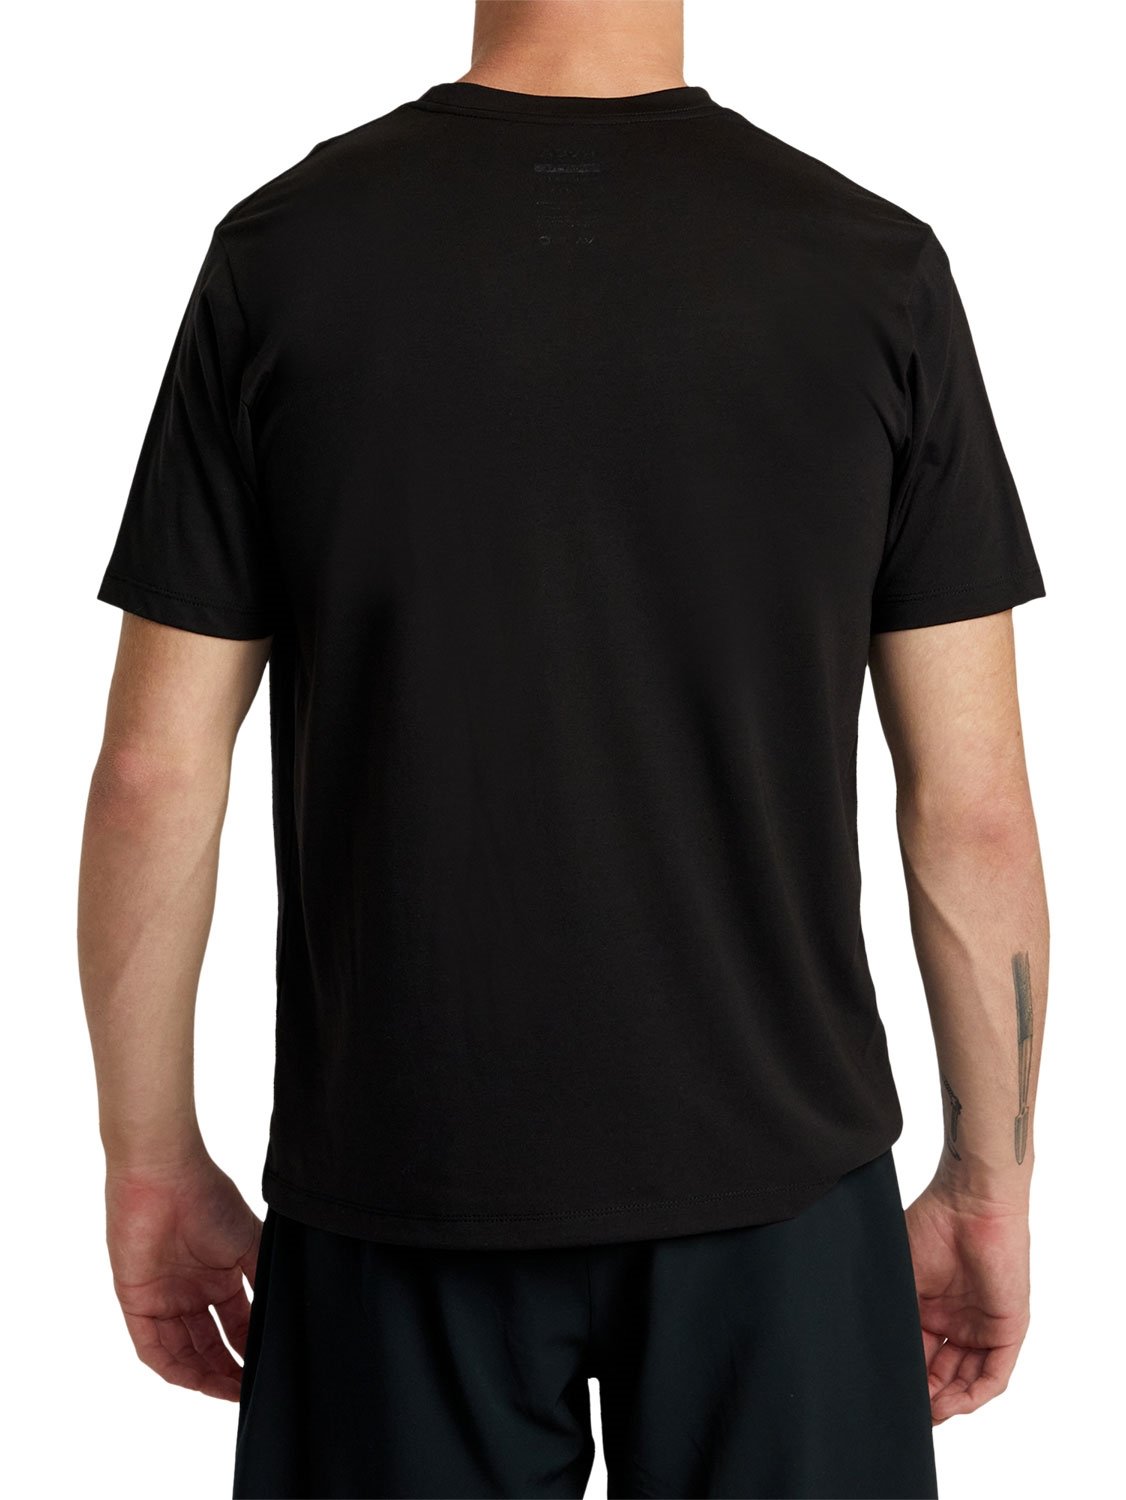 RVCA Men's Segment T-Shirt